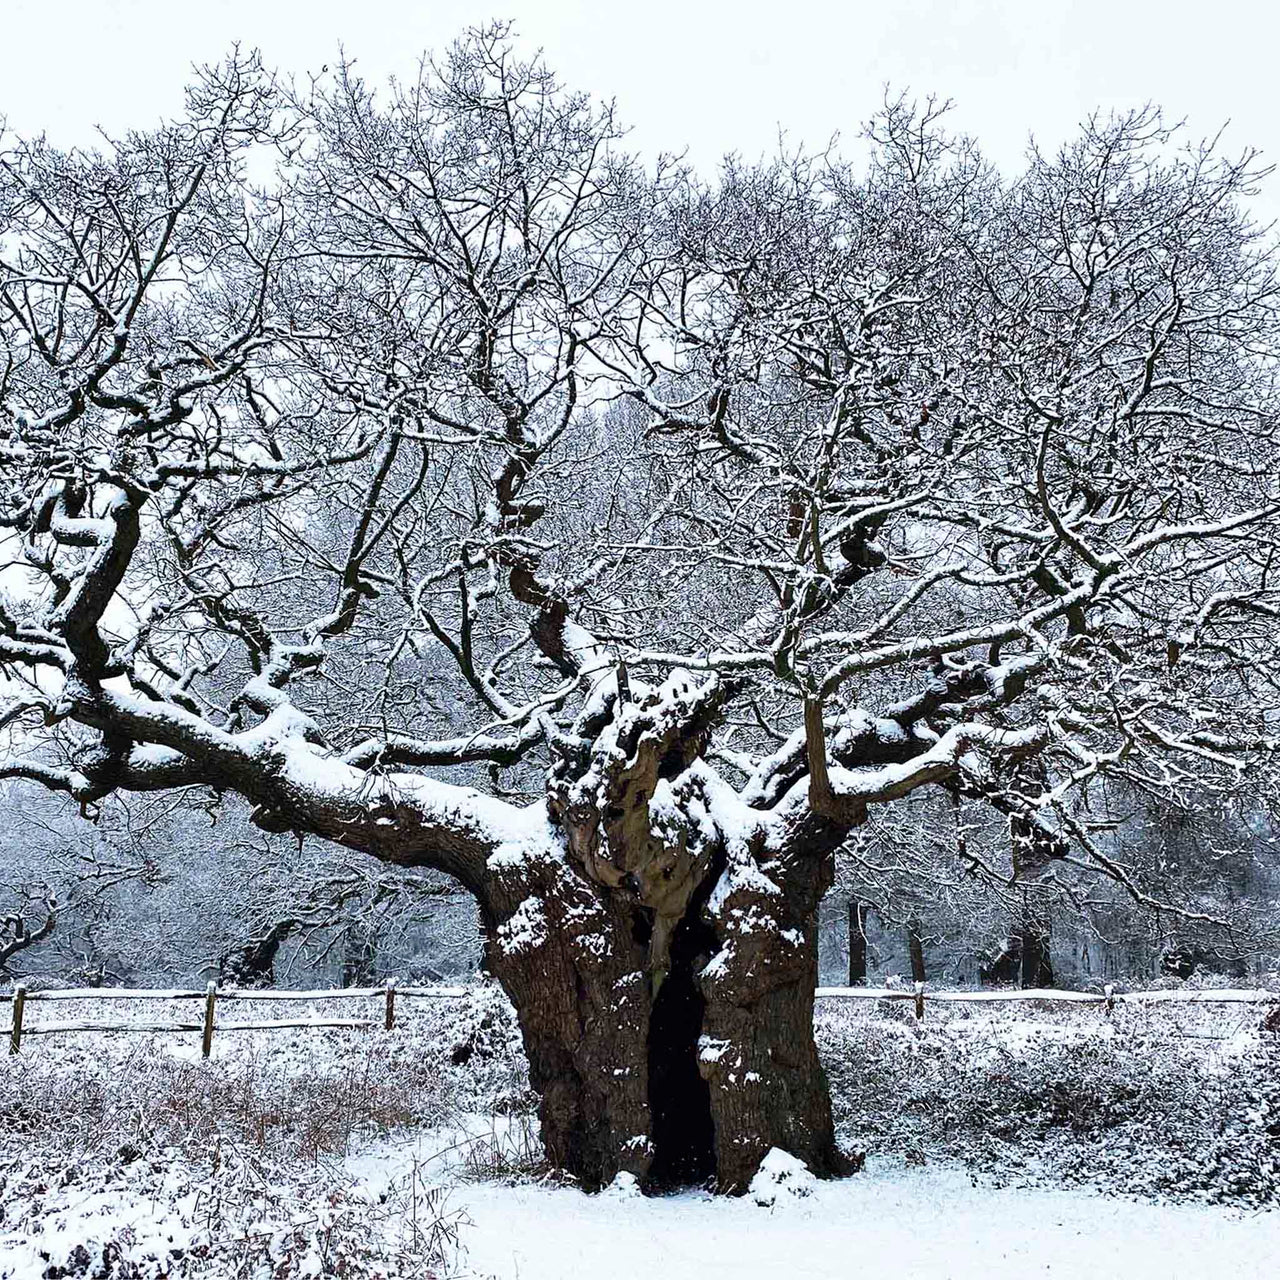 Snowy Old Oak